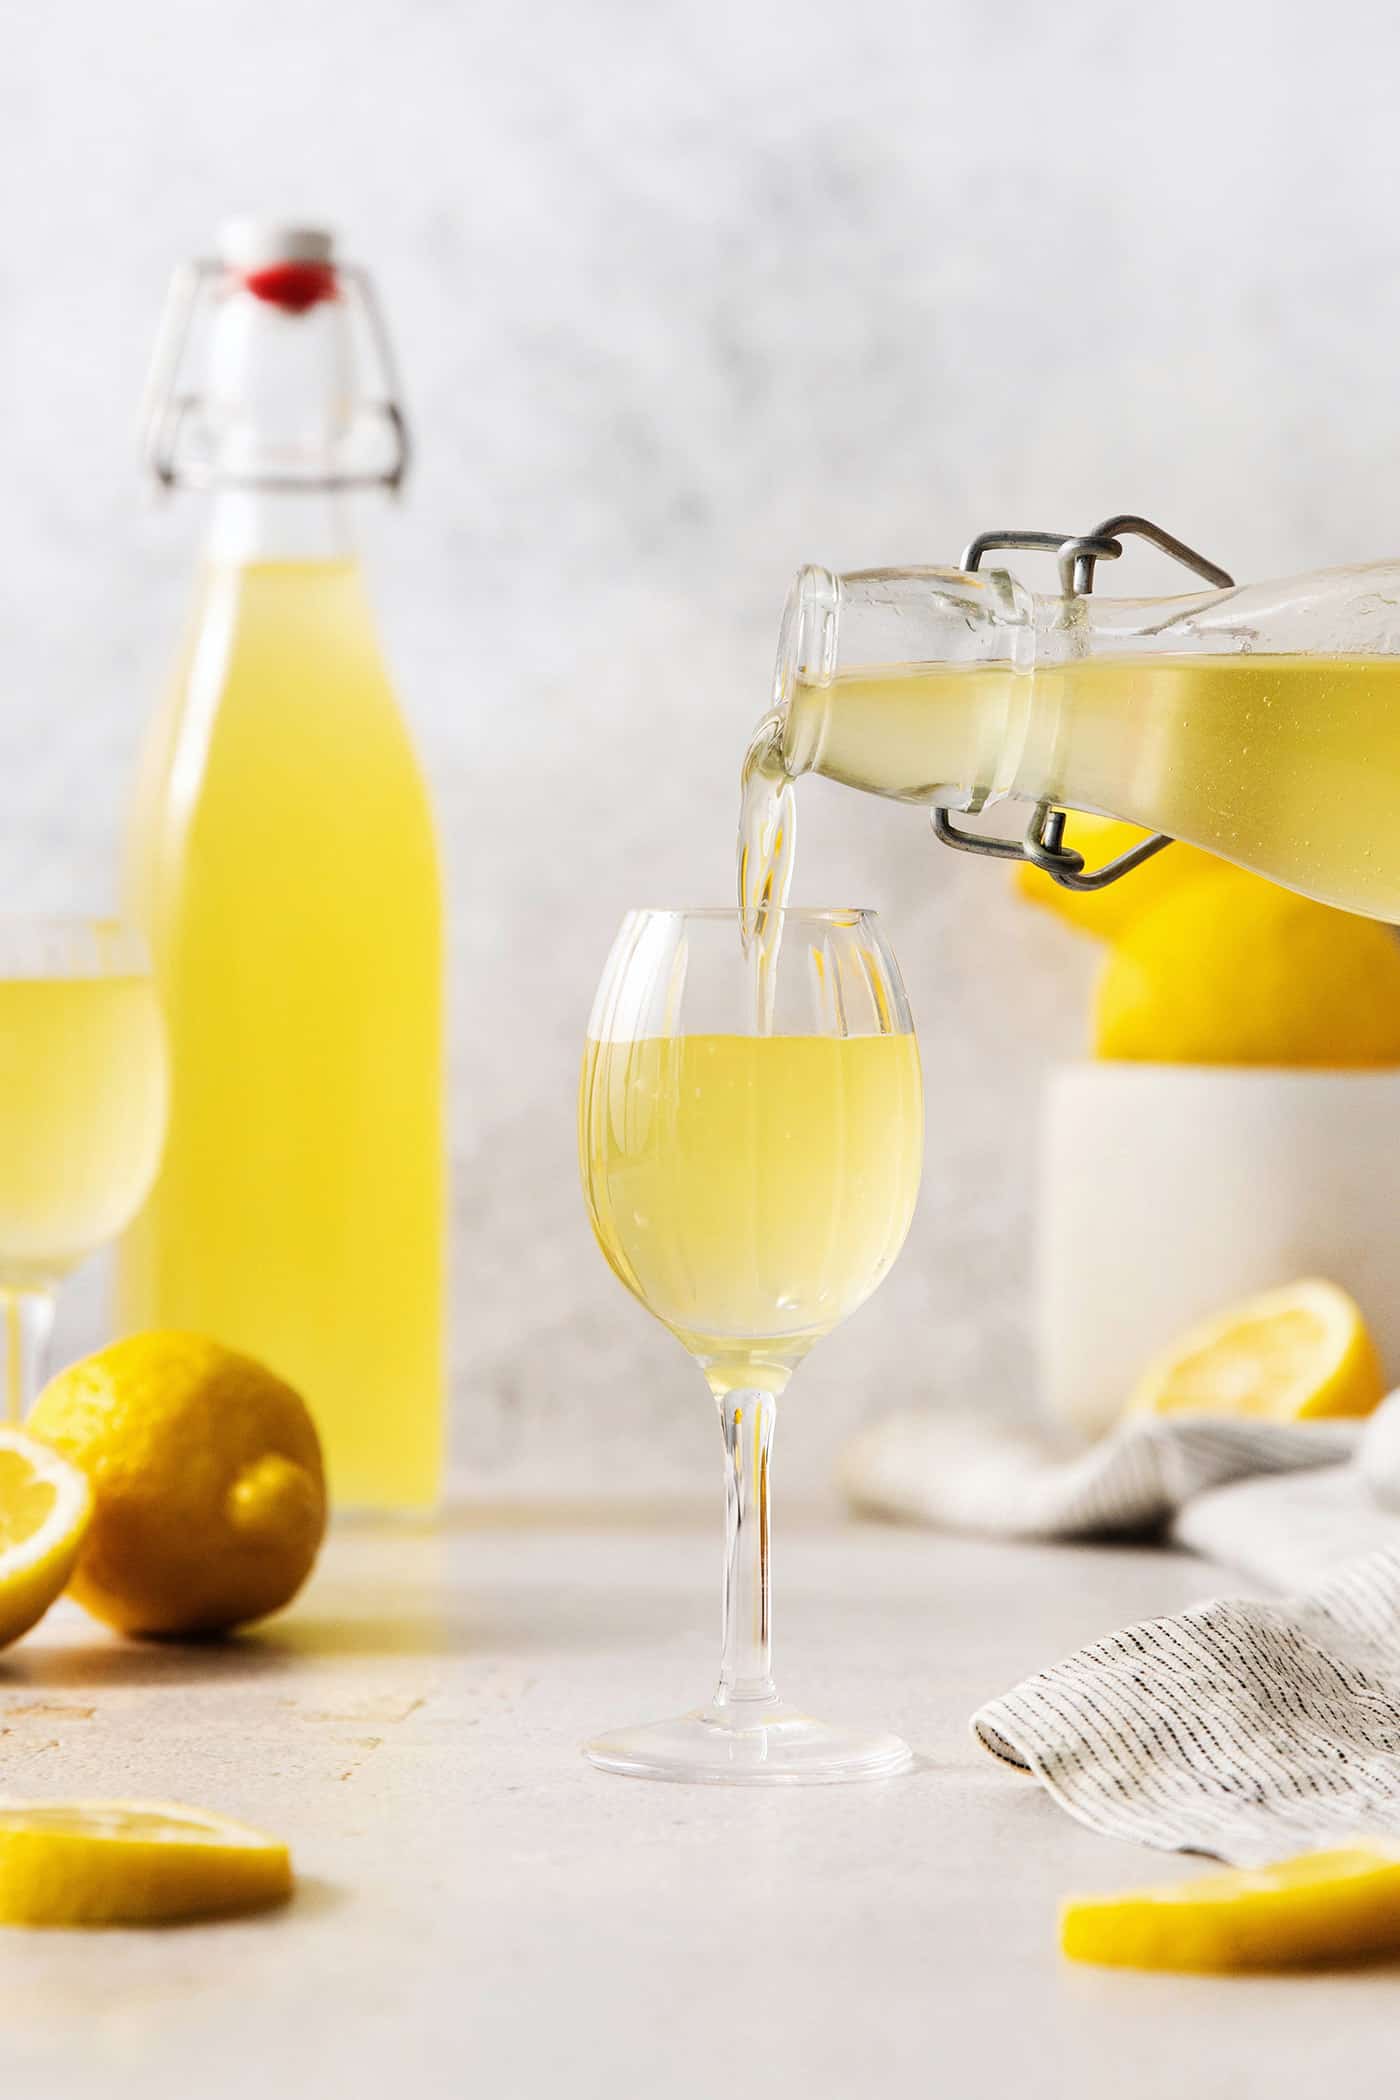 A bottle pours limoncello into a glass.